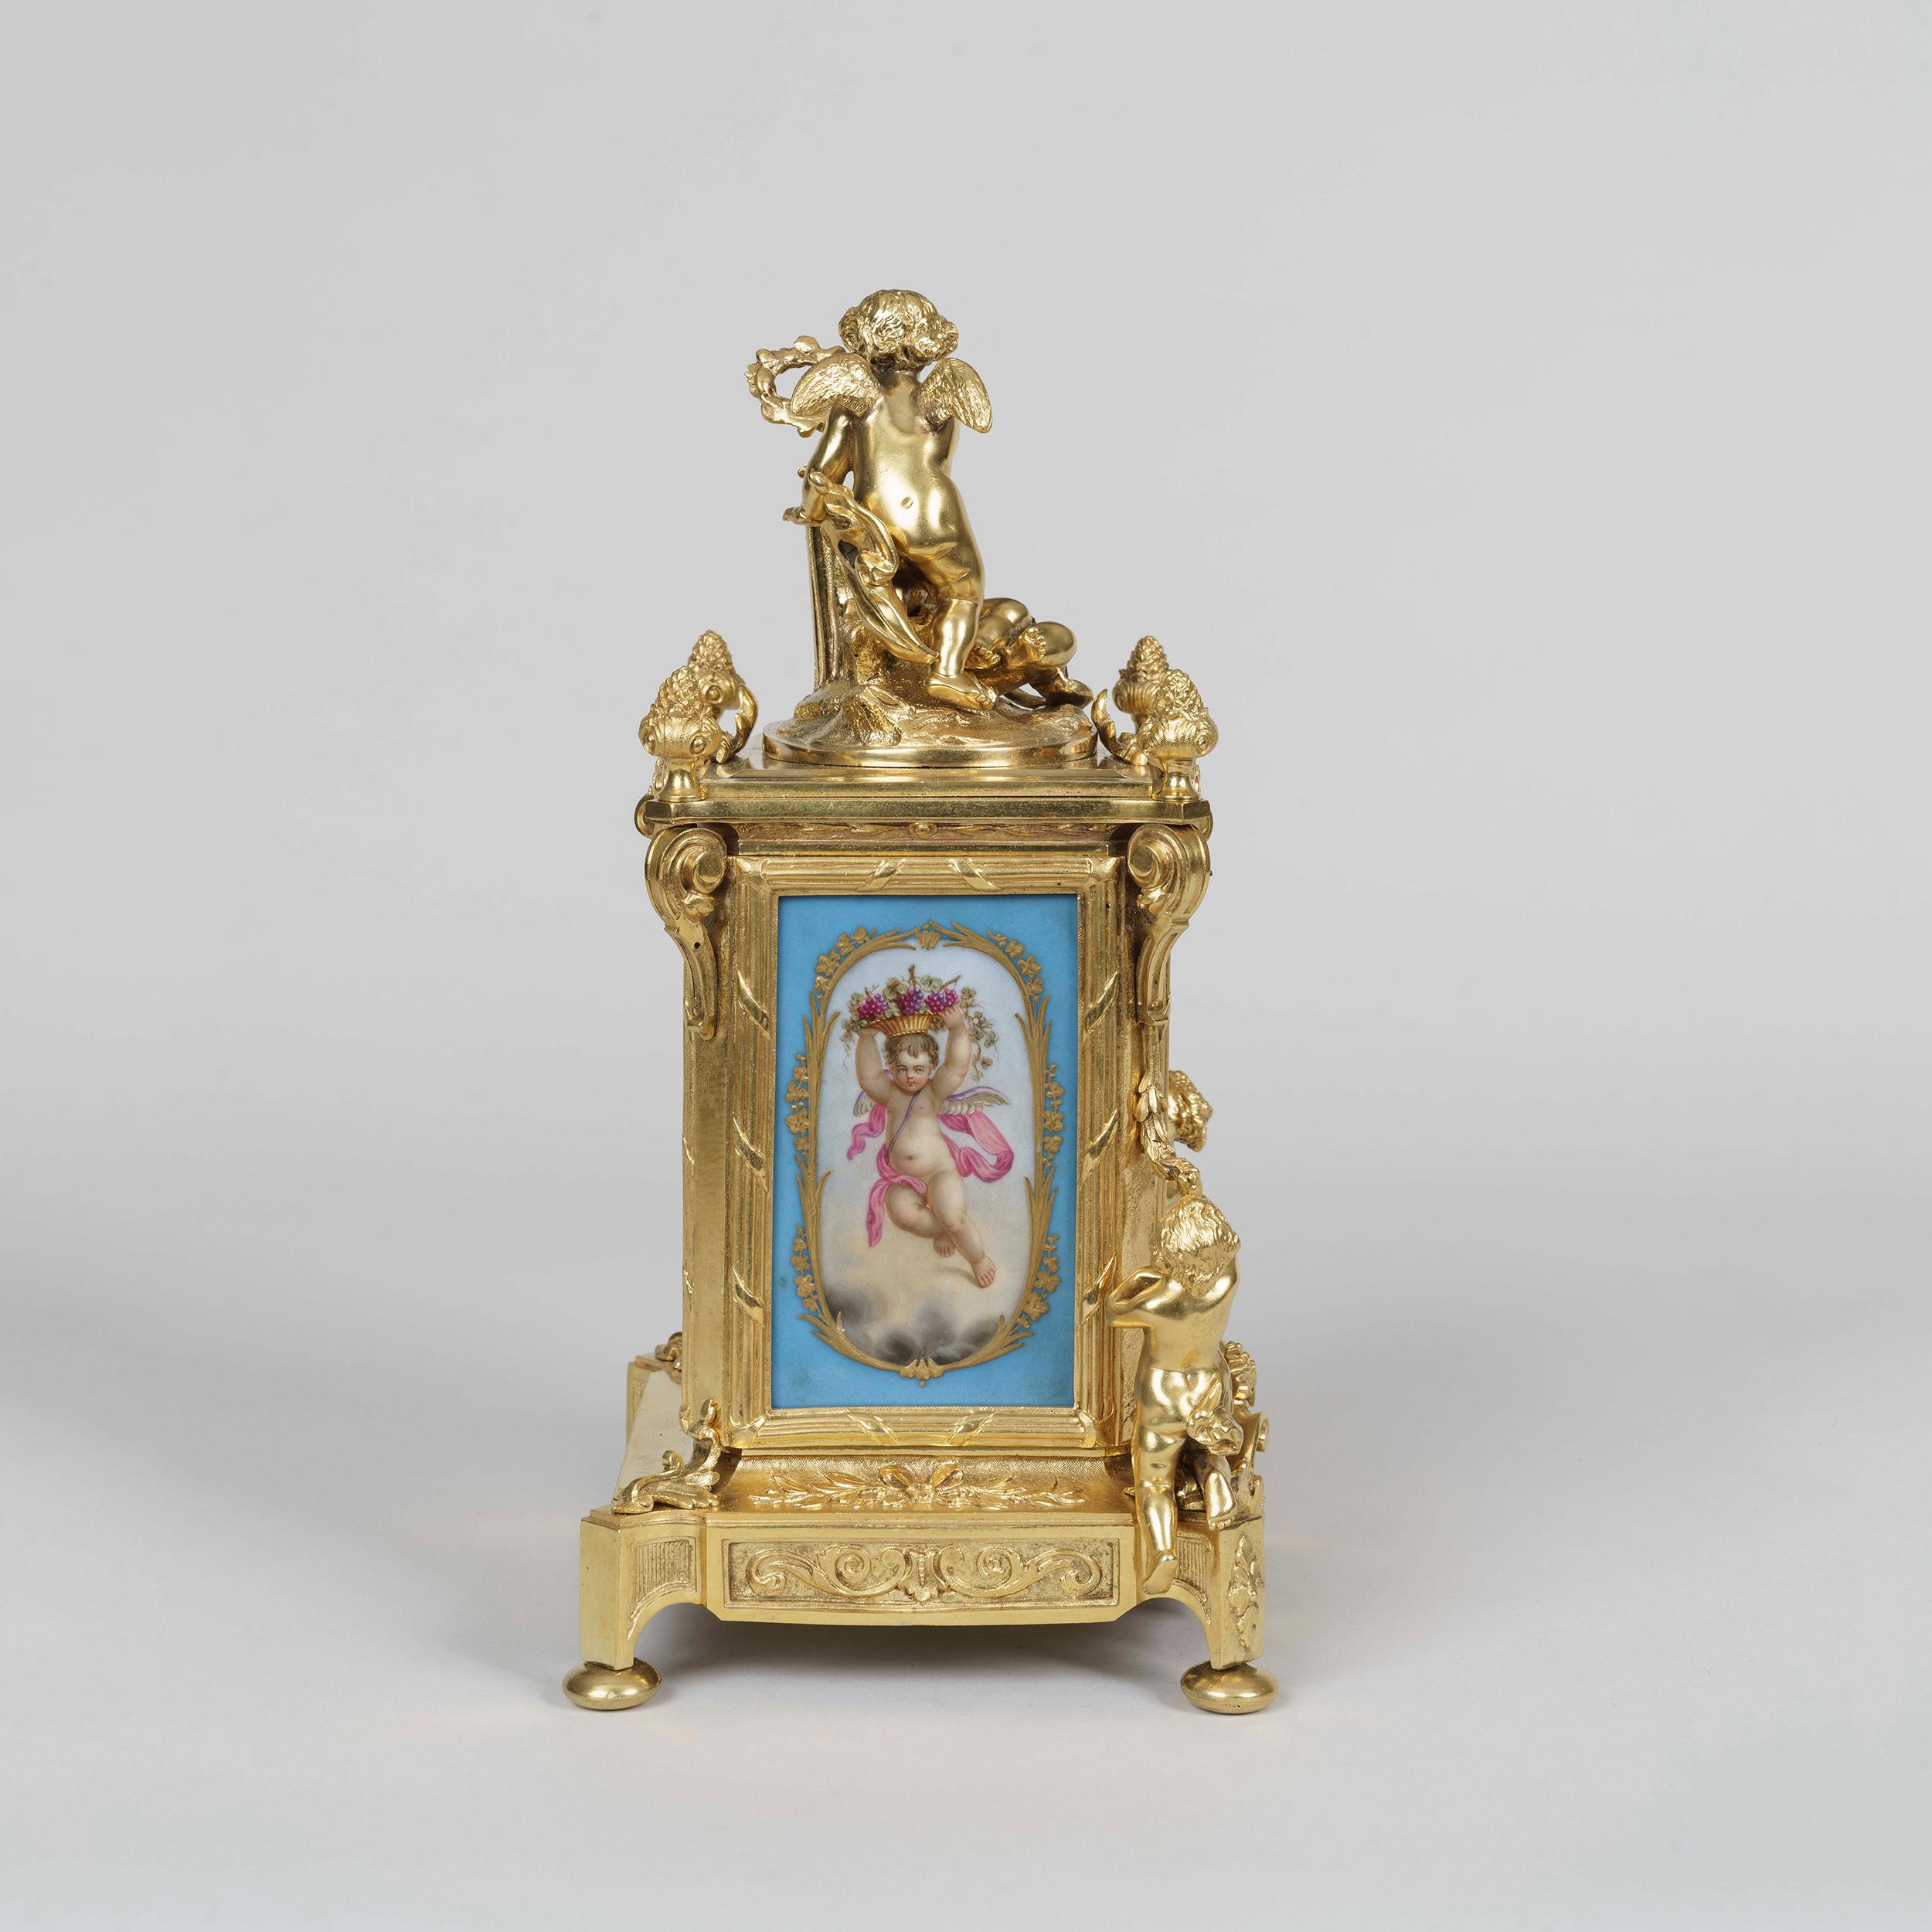 Eine Uhrengarnitur im Louis XVI-Stil
Von Le Roy et Fils

Das Ormolu-Uhrengehäuse und der dazugehörige Kandelaber sind mit blauen, handdekorierten polychromen Tafeln im Sevres-Stil auf dem Zifferblatt und den Seiten versehen, die Amorini, Blumen